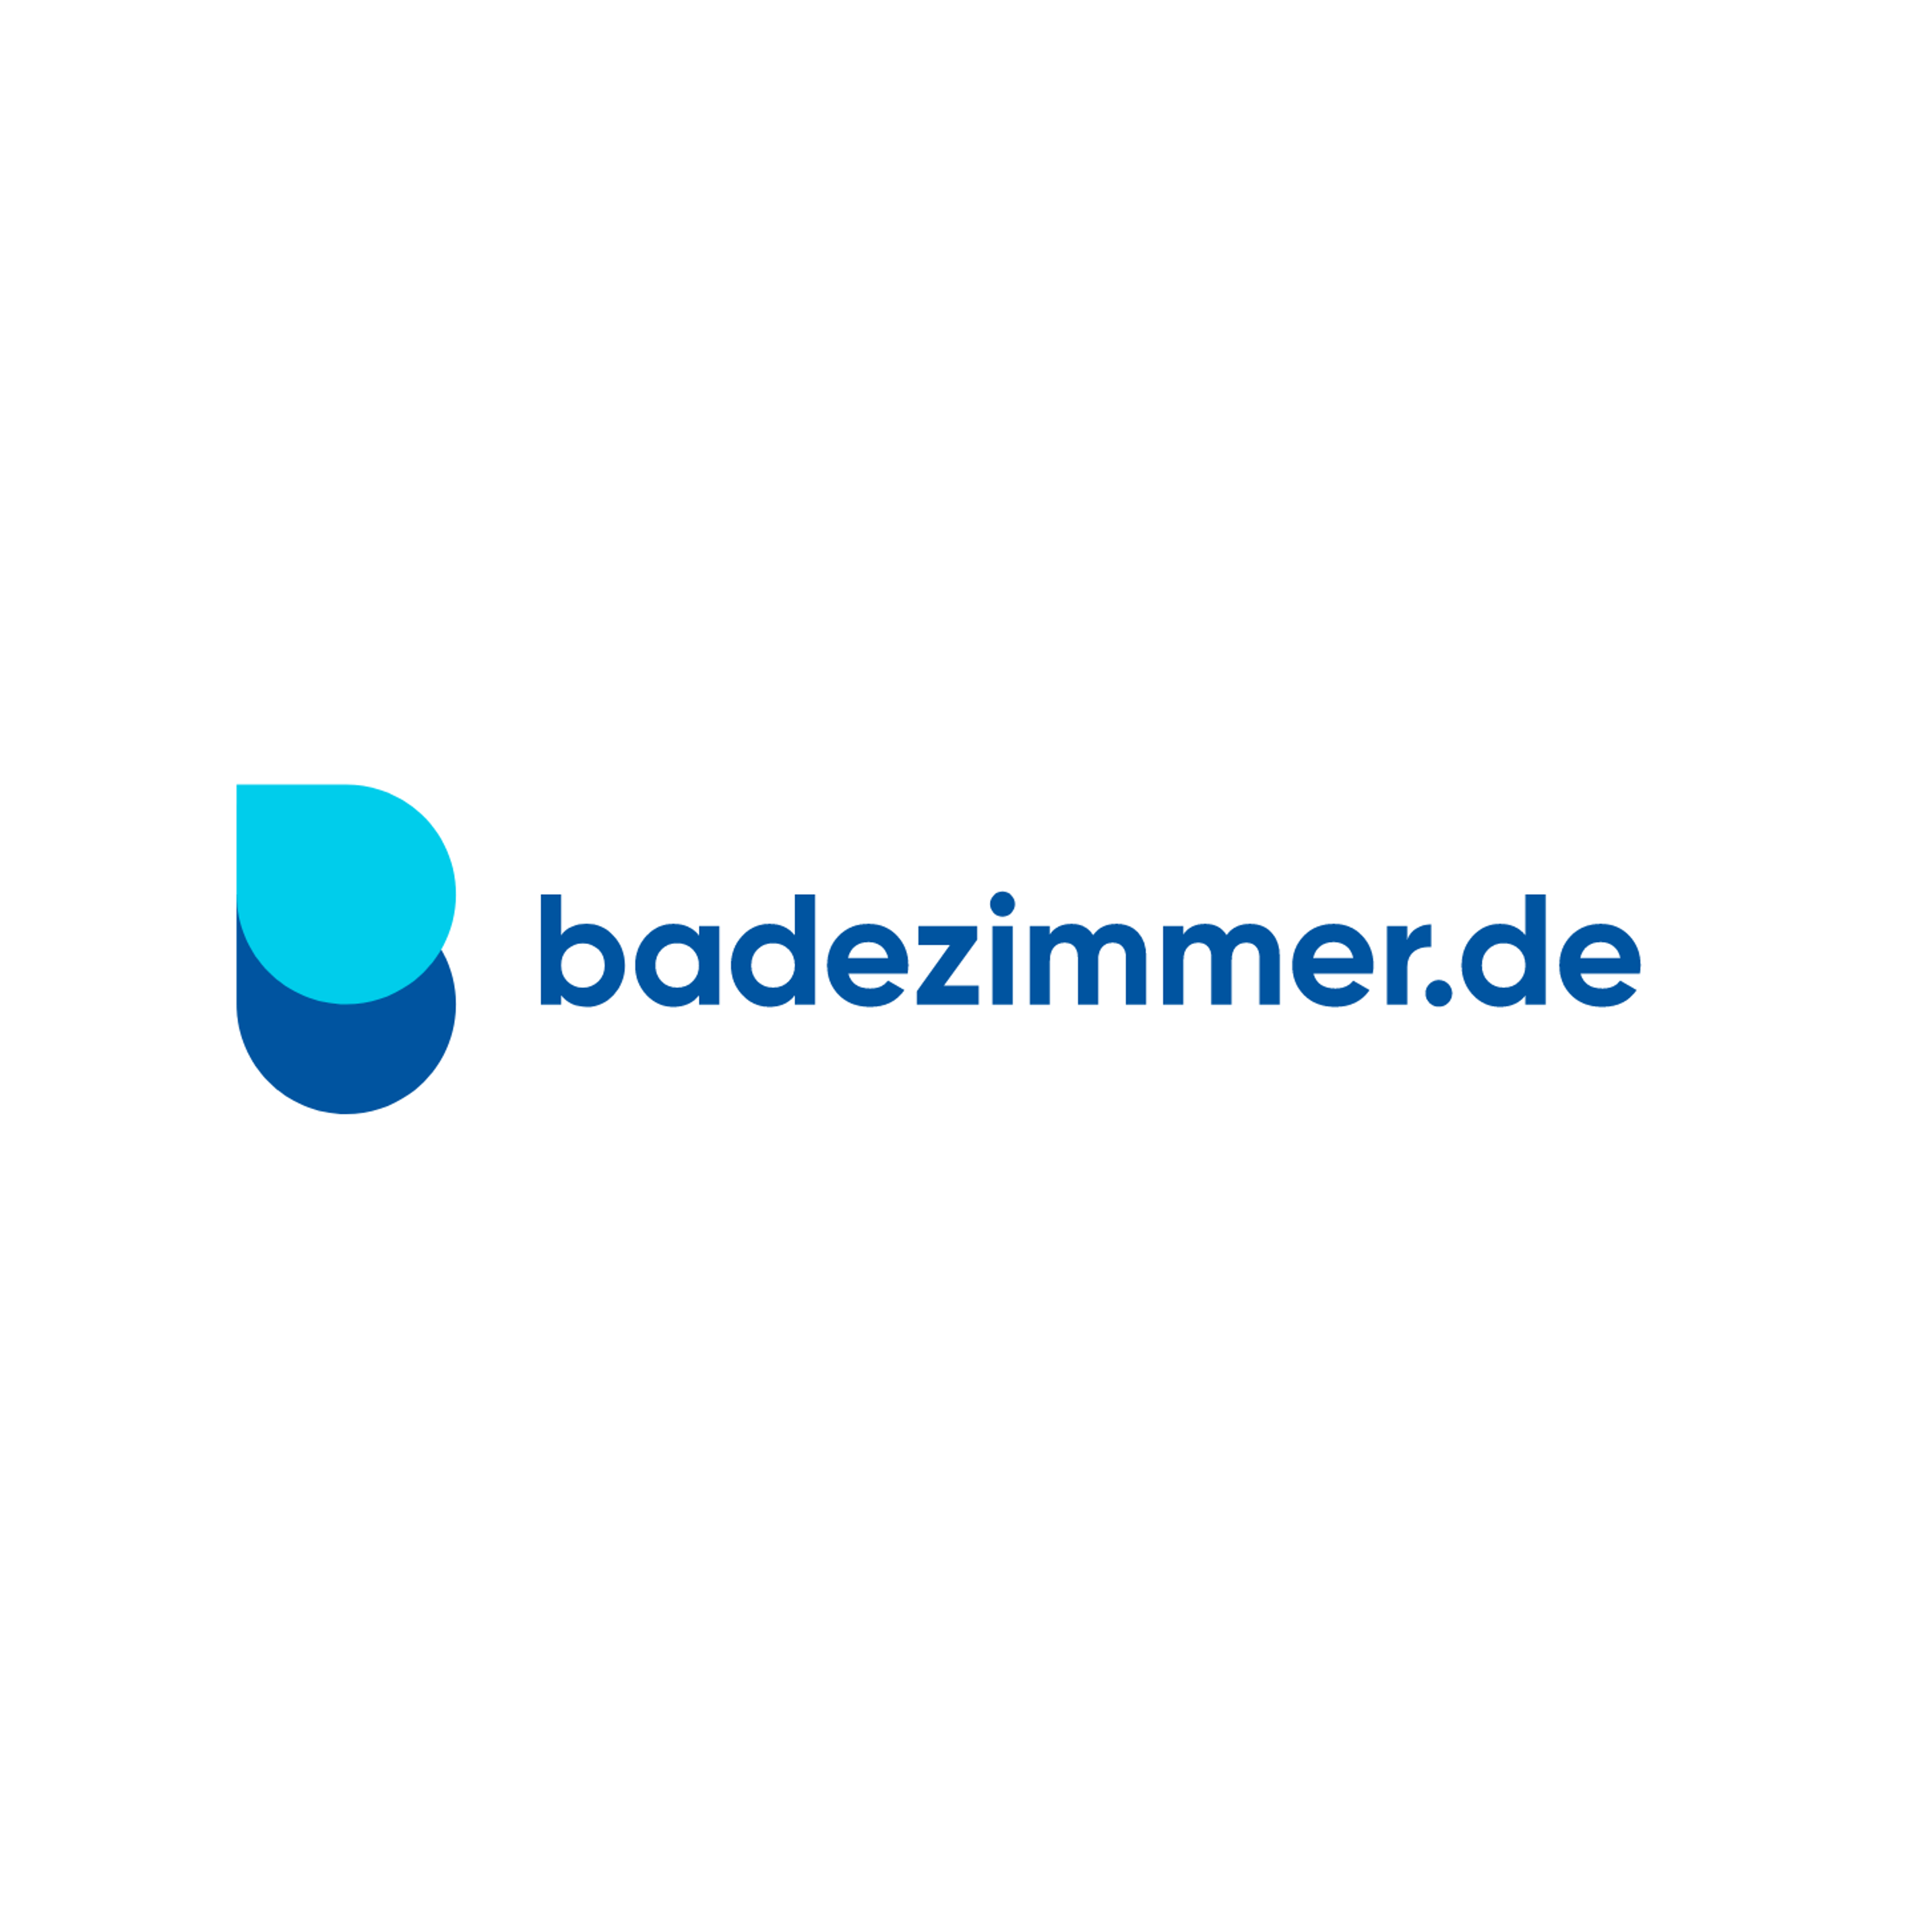 badezimmer.de Badausstellung Bocholt - ELMER in Bocholt - Logo